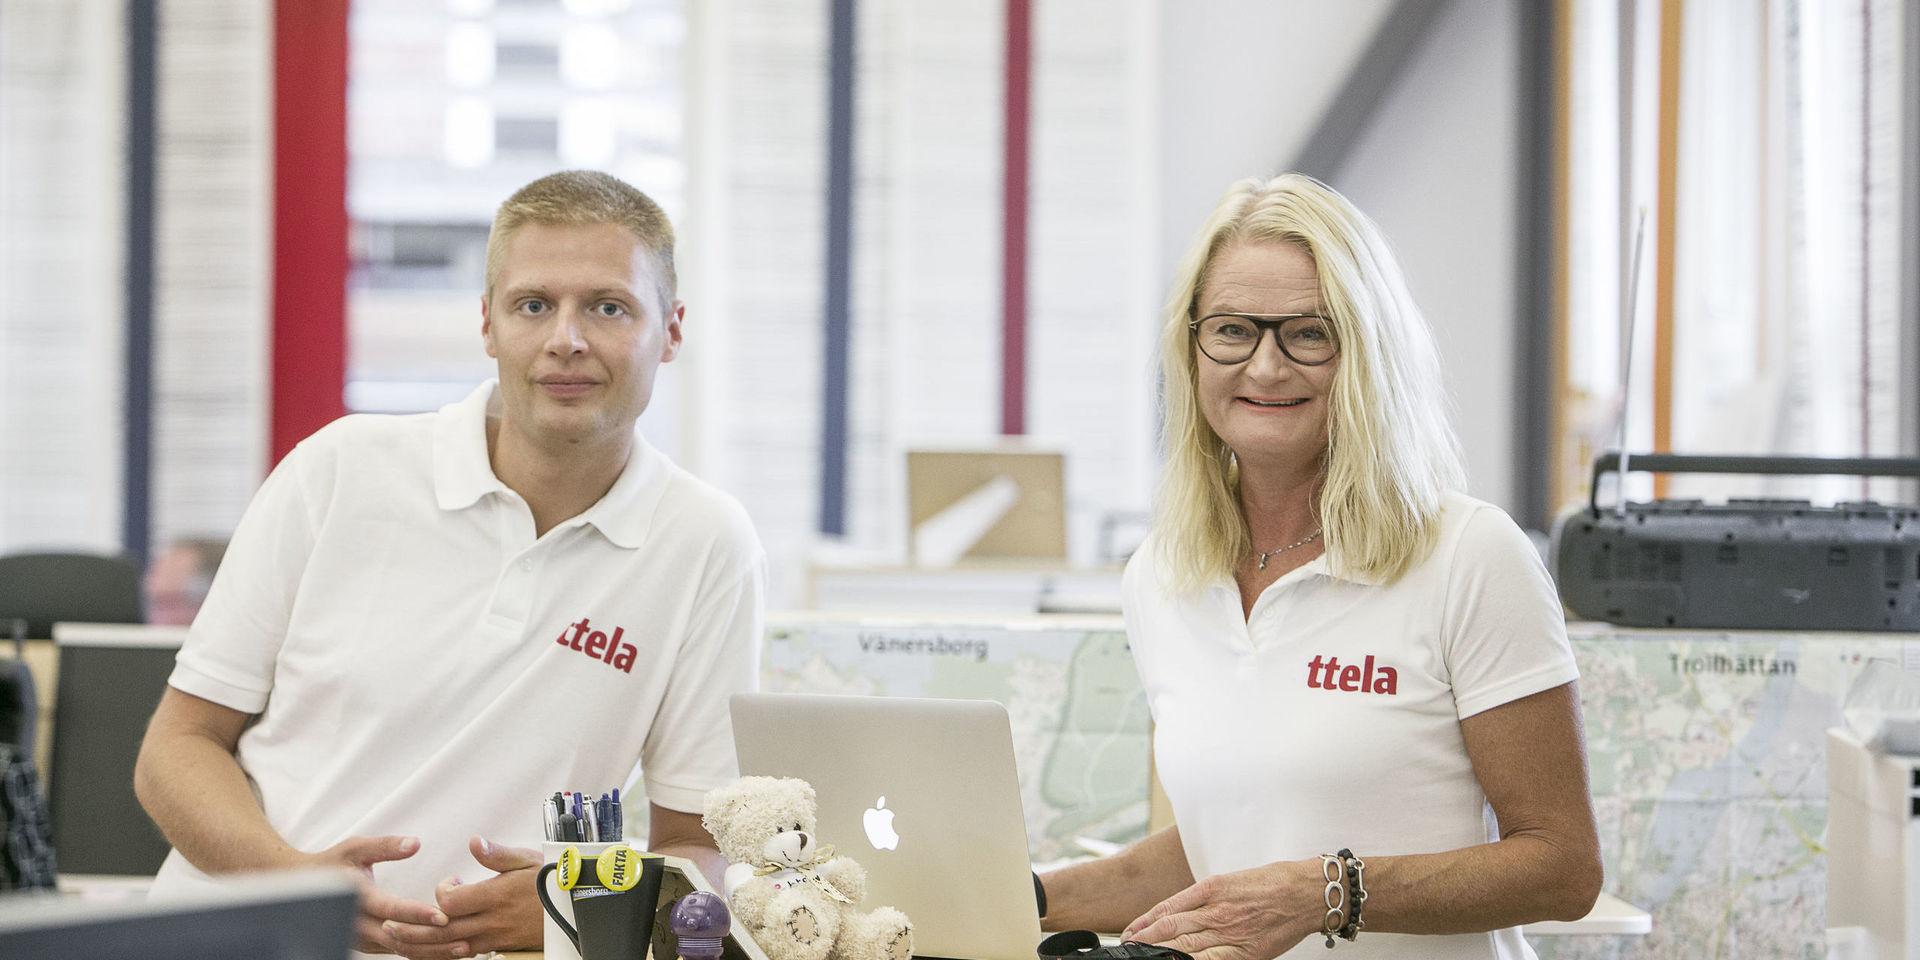 TTELA:s ledarskribent Max Eskilsson och publisher Cecilia Frisk håller i tisdagens valdebatt i Trollhättan.